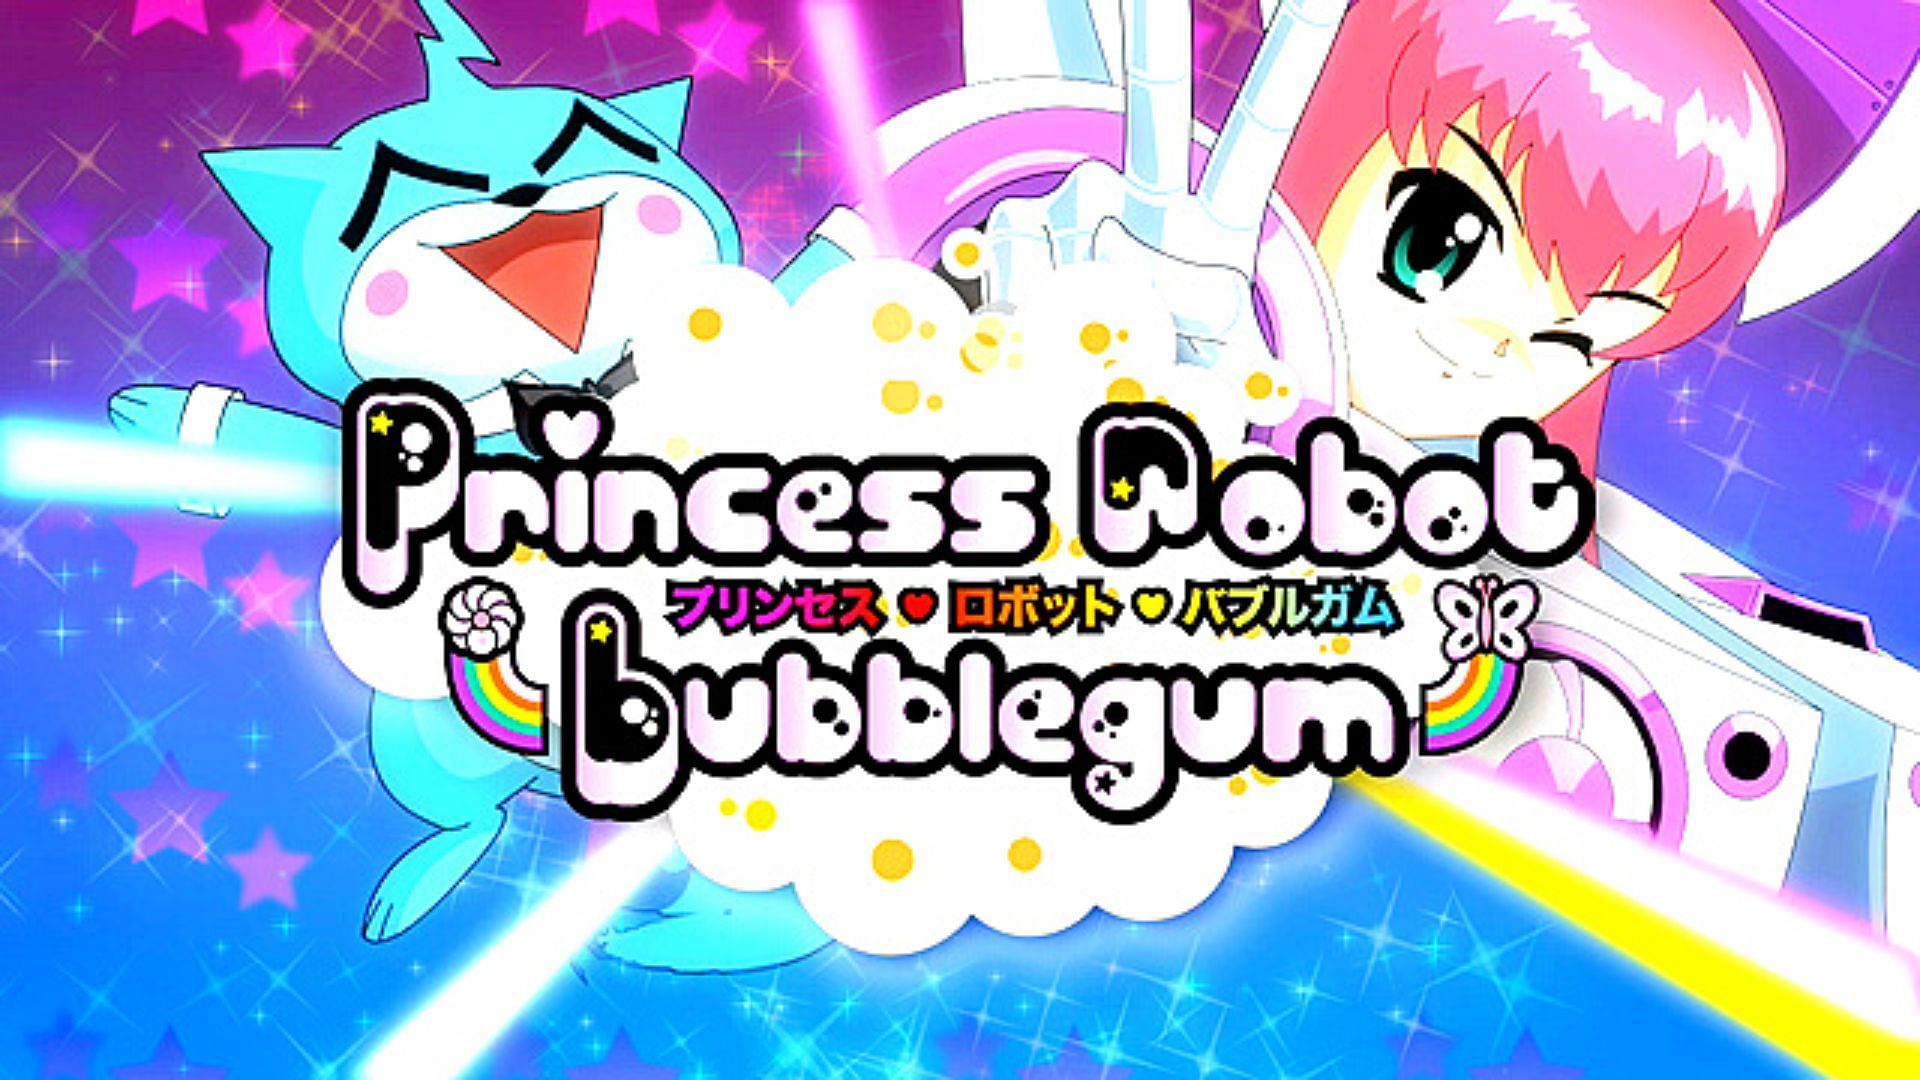 Robot princess bubblegum gta 5 art фото 31